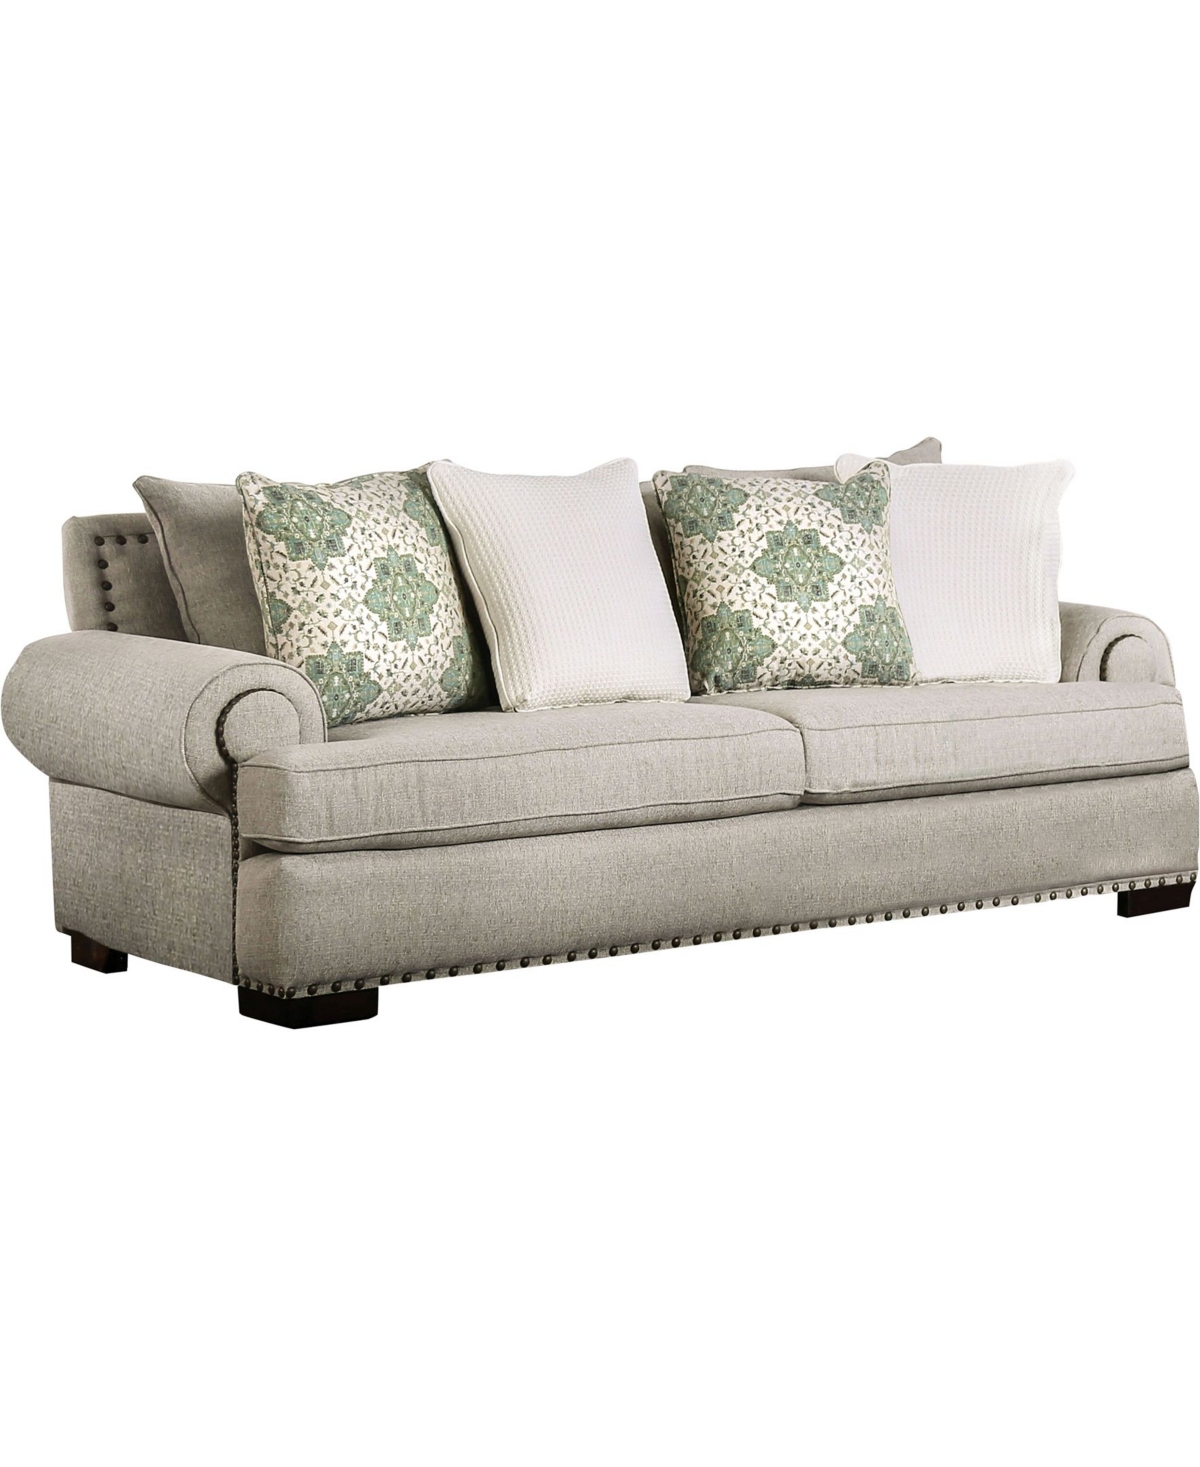 of America Sprell Upholstered Sofa